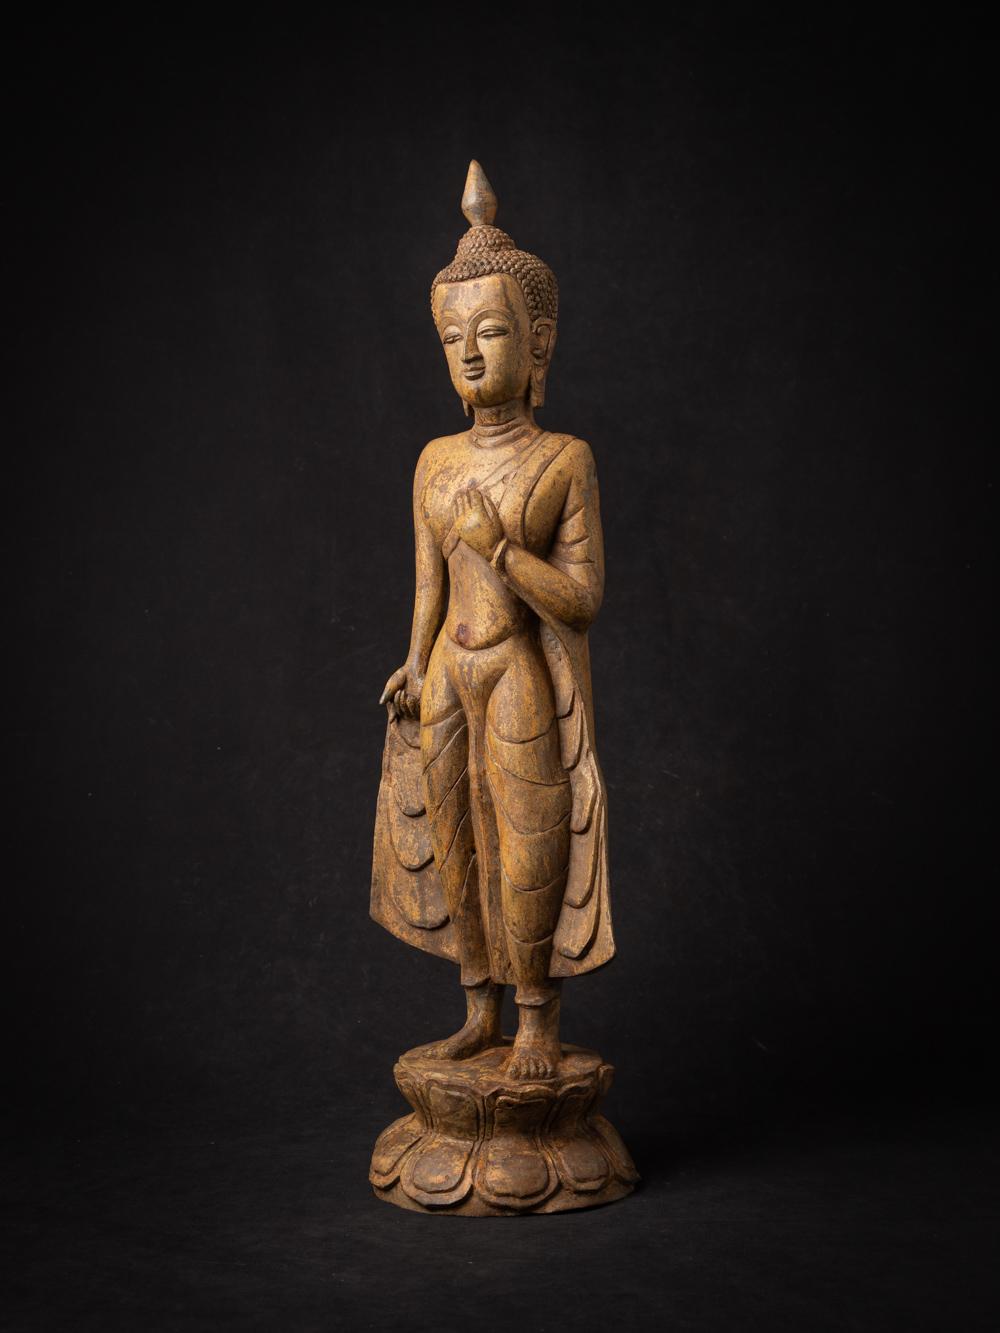 MATERIAL : Bronze
60,8 cm hoch
17,7 cm breit und 14,1 cm tief
Mitte des 20. Jahrhunderts
Gewicht: 6,74 kg
Mit Ursprung in Birma
Nr: X-23-2